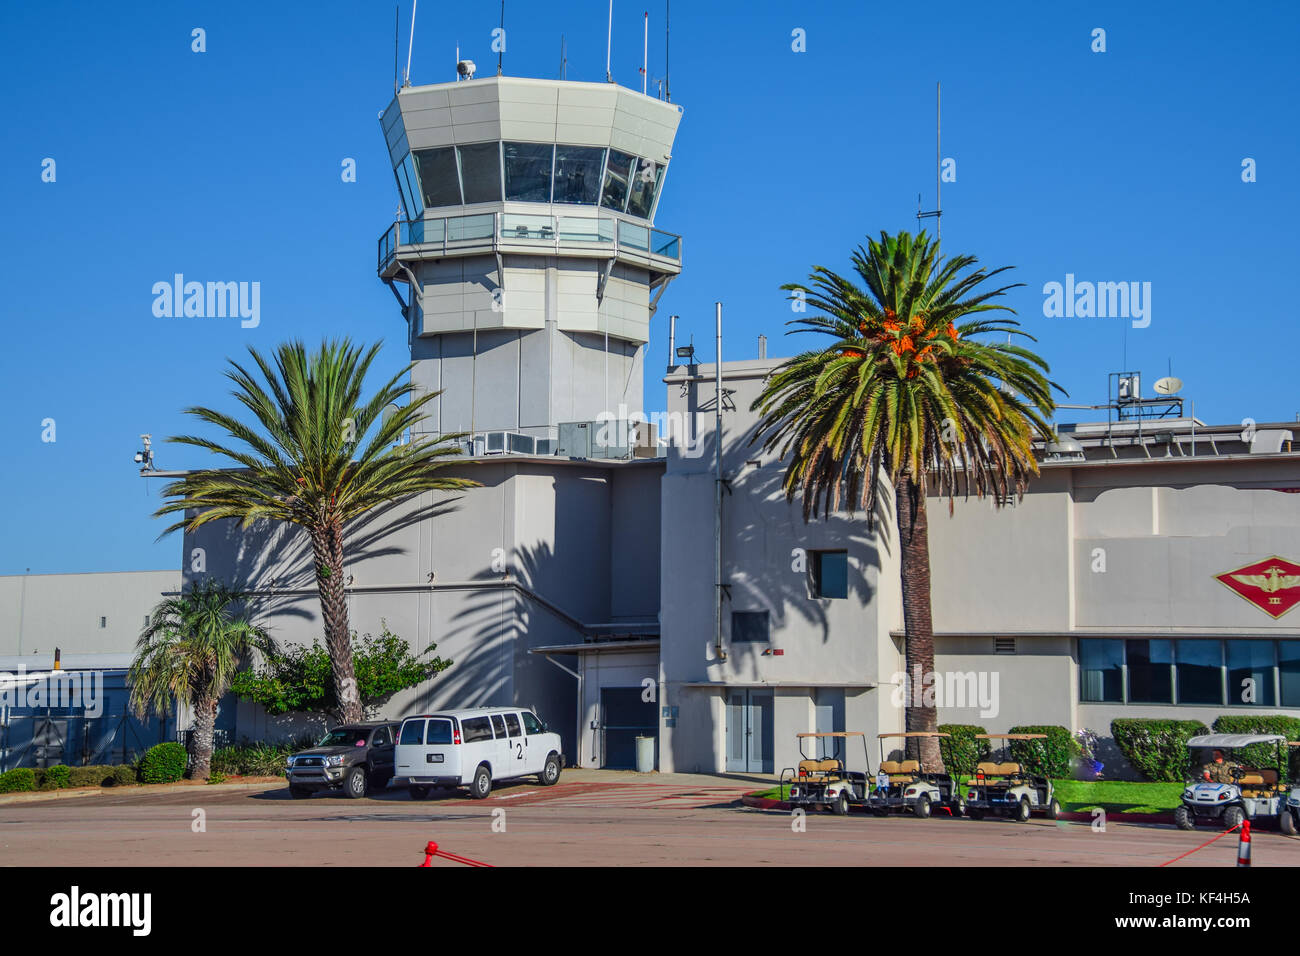 Torre de control del aeropuerto de dirigir el tráfico de aviones Foto de stock